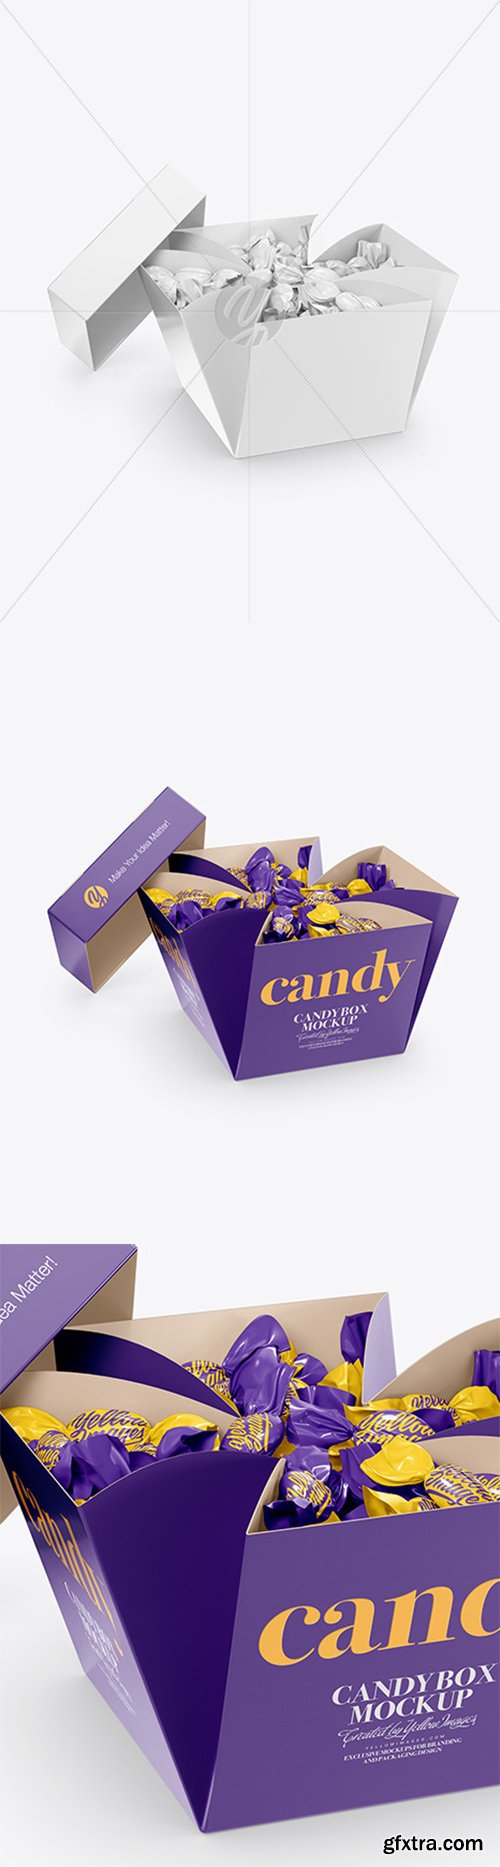 Candy Box Mockup 49038